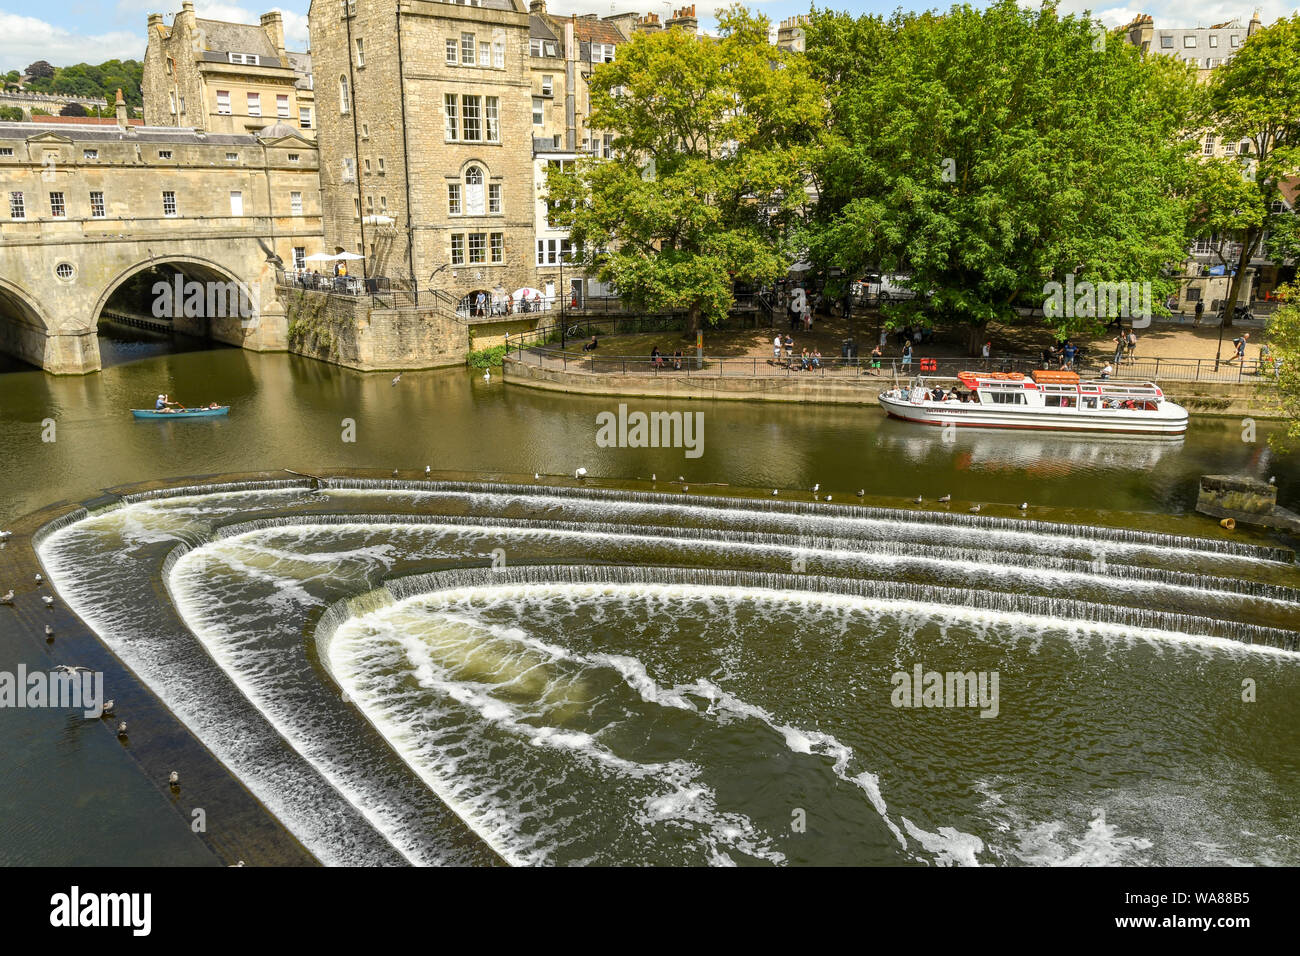 BATH, Inglaterra - Julio 2019: el azud Pulteney con forma de herradura, sobre el río Avon y el puente Pulteney en el centro de Bath. Foto de stock